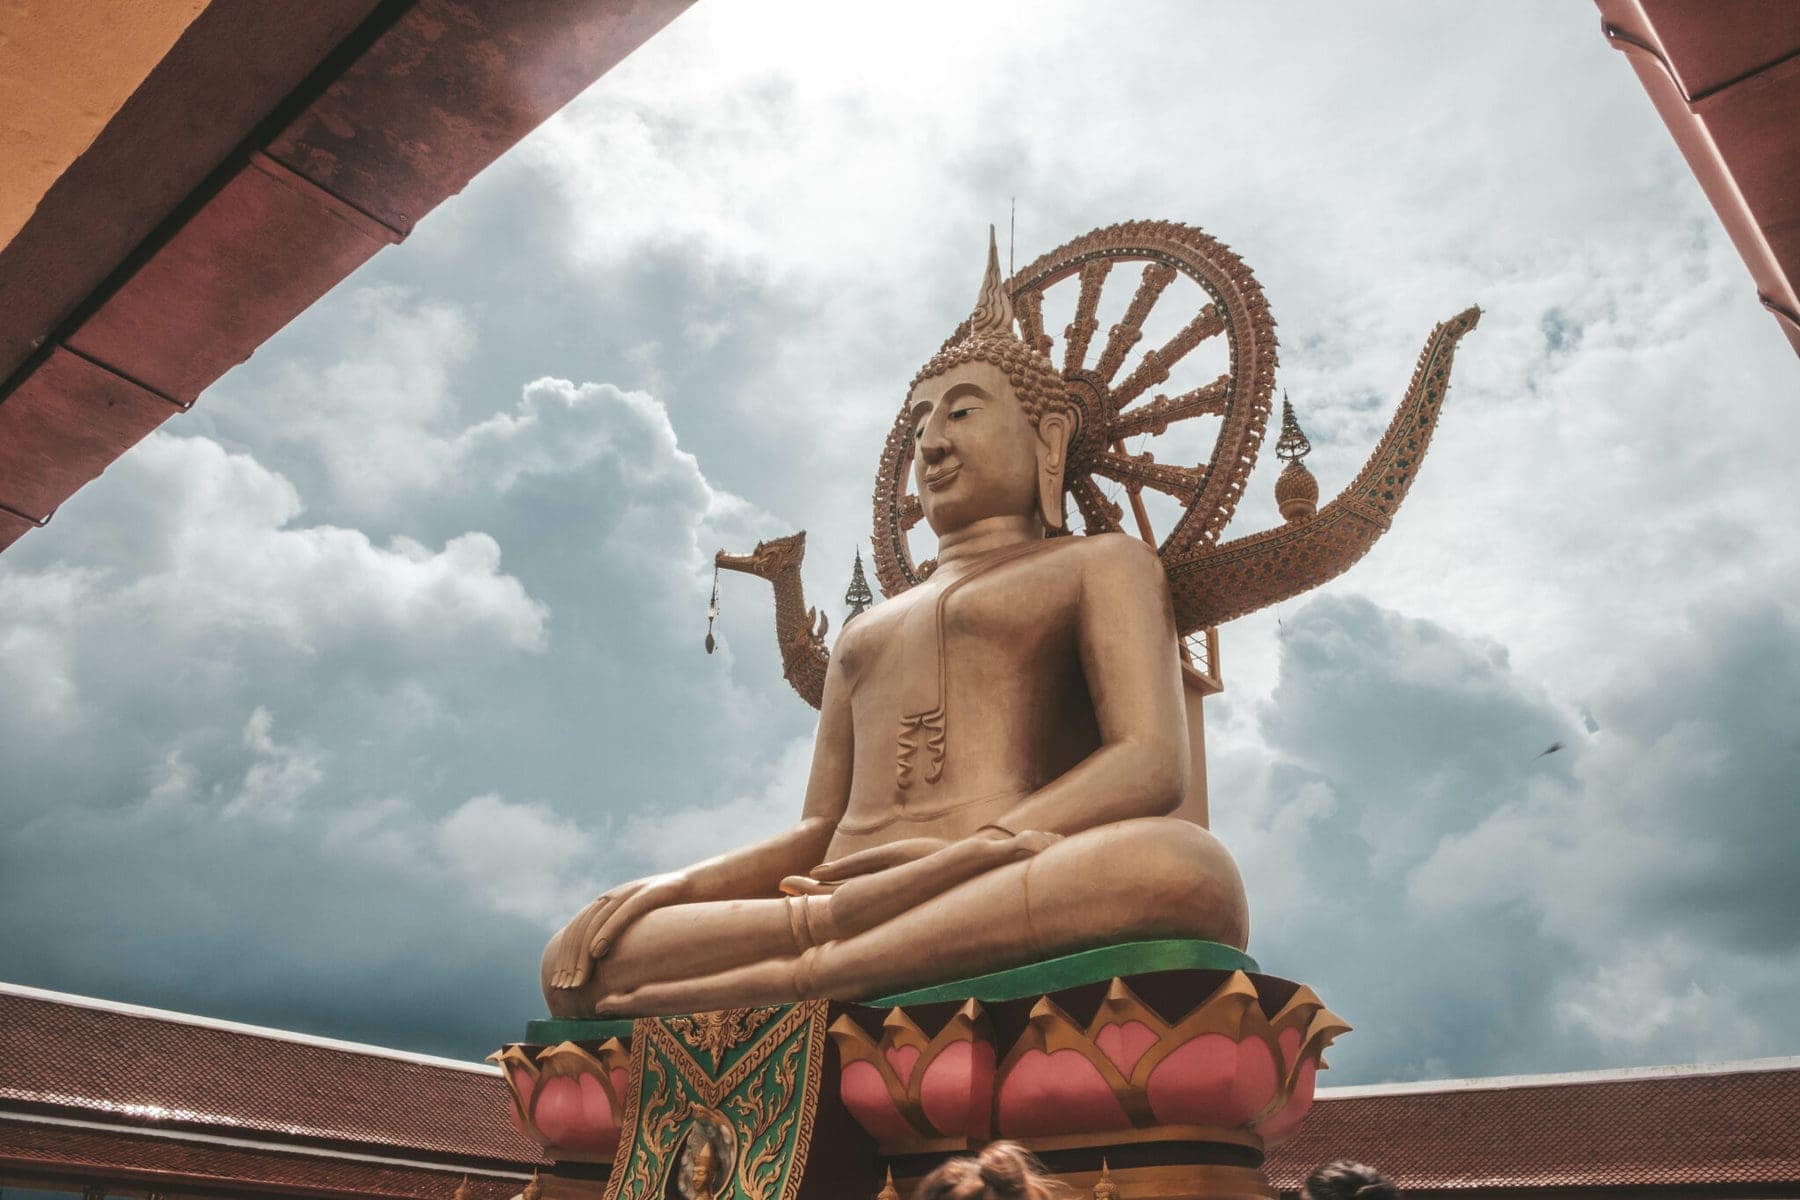 Co vidět na Koh Samui? Dvanáctimetrový Buddha na Koh Samui